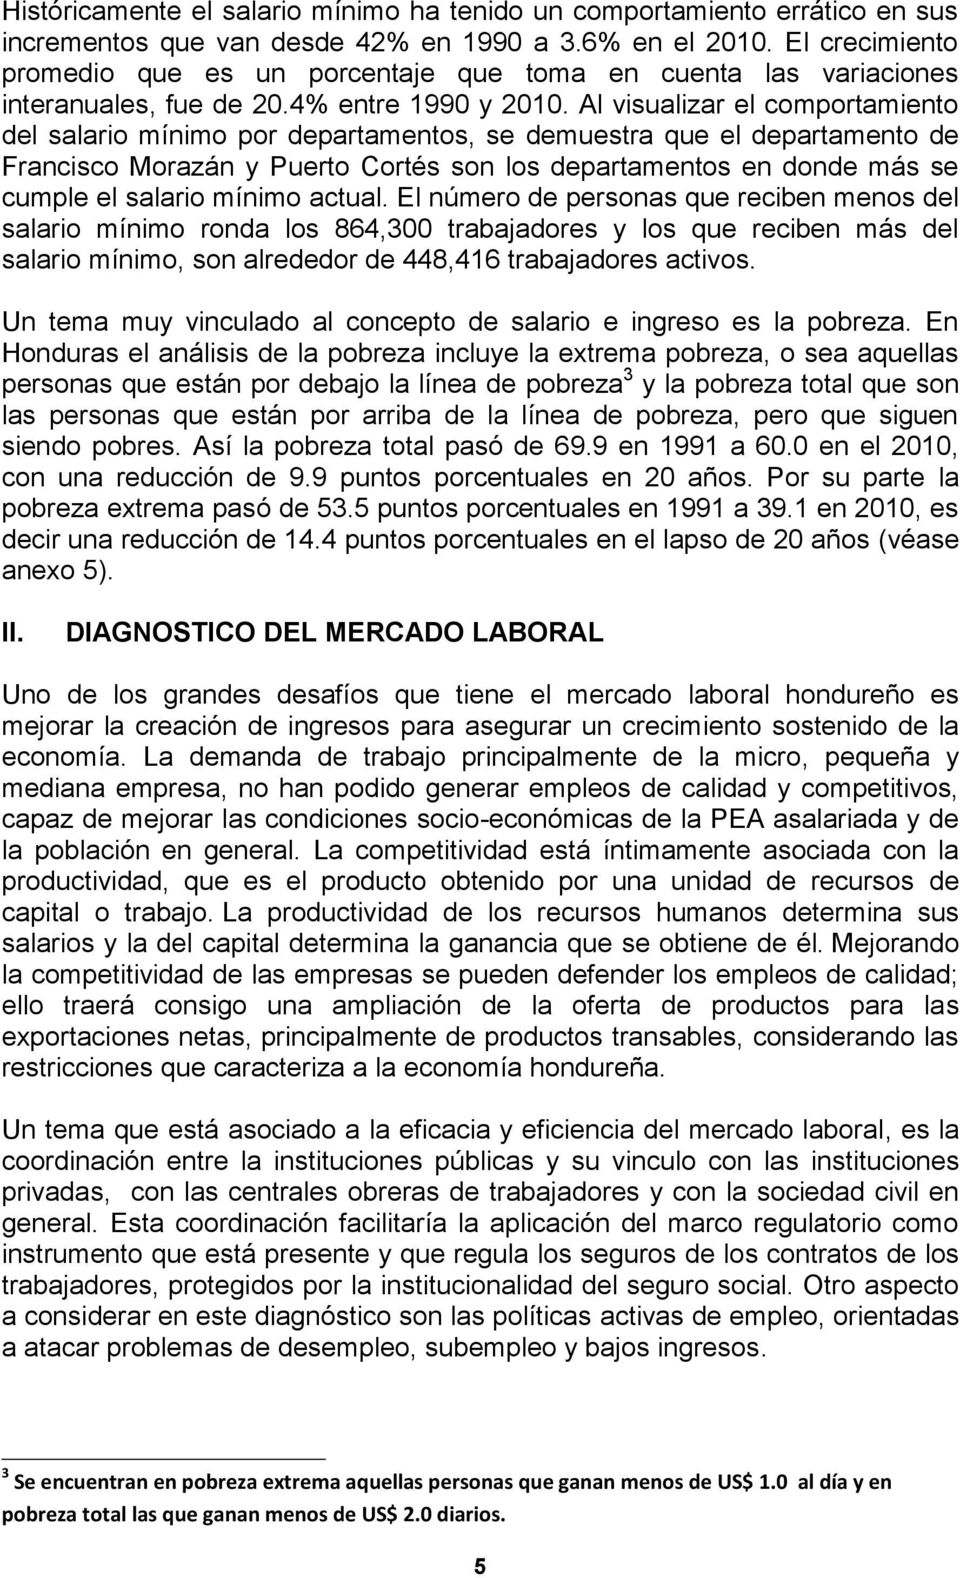 Al visualizar el comportamiento del salario mínimo por departamentos, se demuestra que el departamento de Francisco Morazán y Puerto Cortés son los departamentos en donde más se cumple el salario